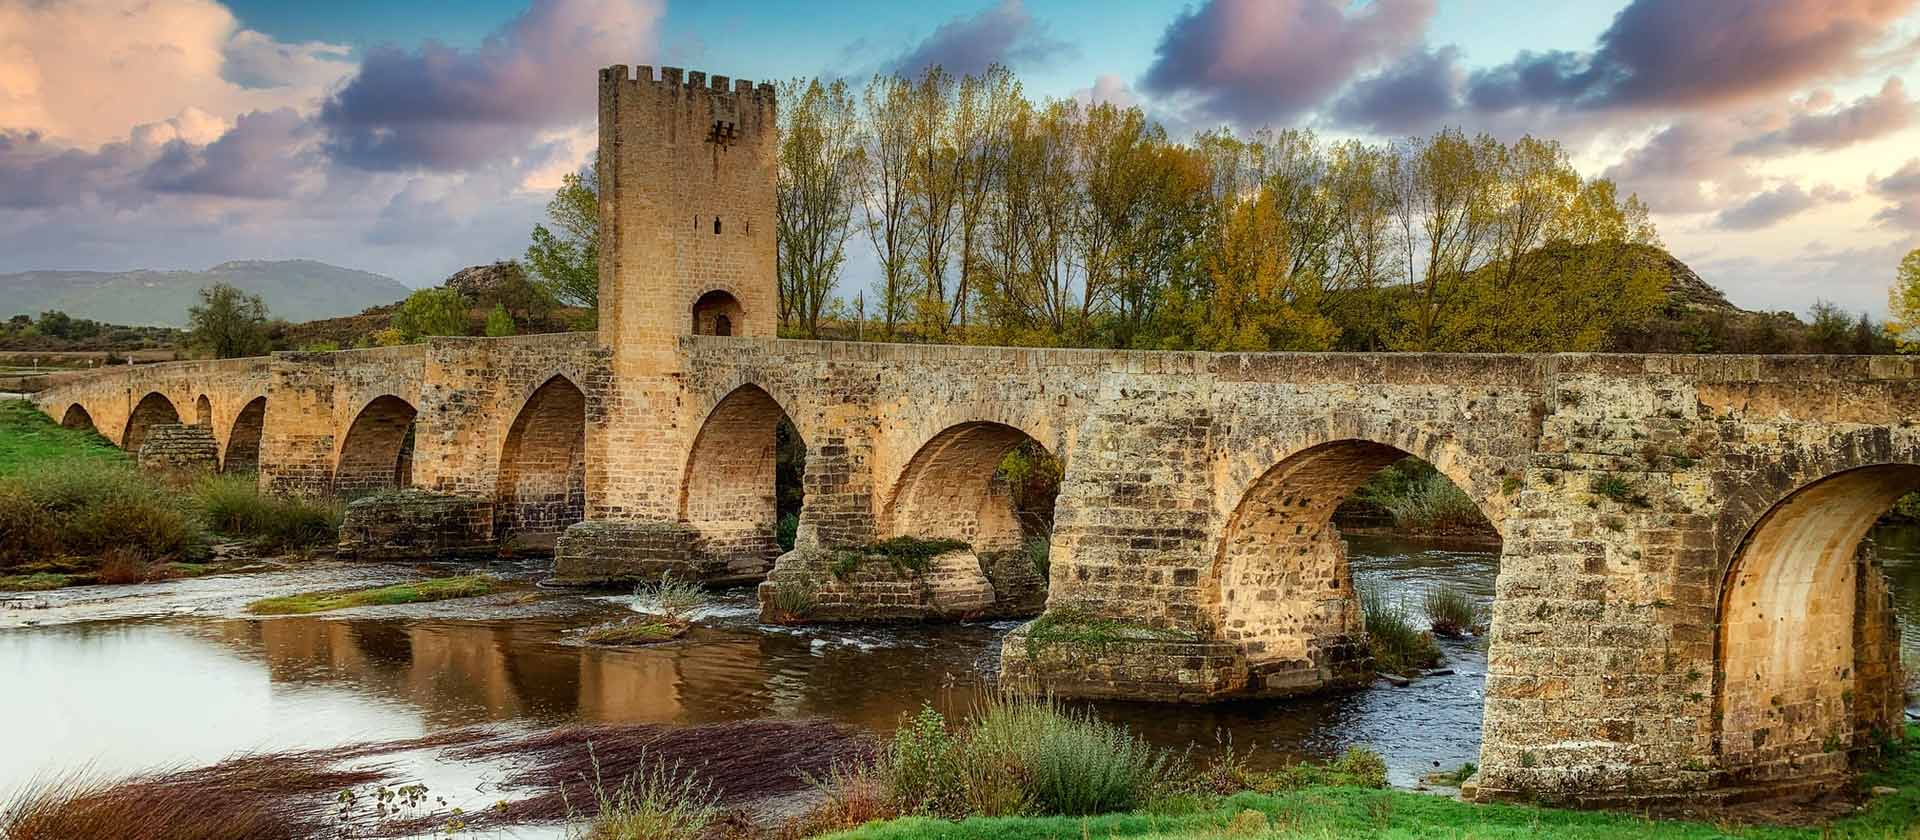 un pont de vieilles brique en Espagne sous un beau ciel de soir